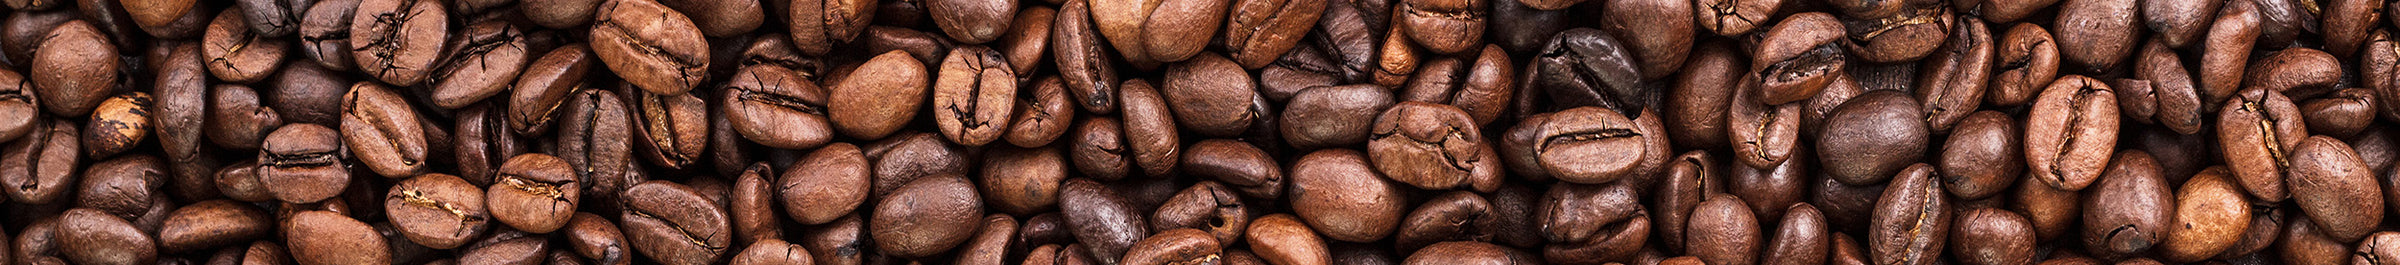 coffee bean closeup banner 